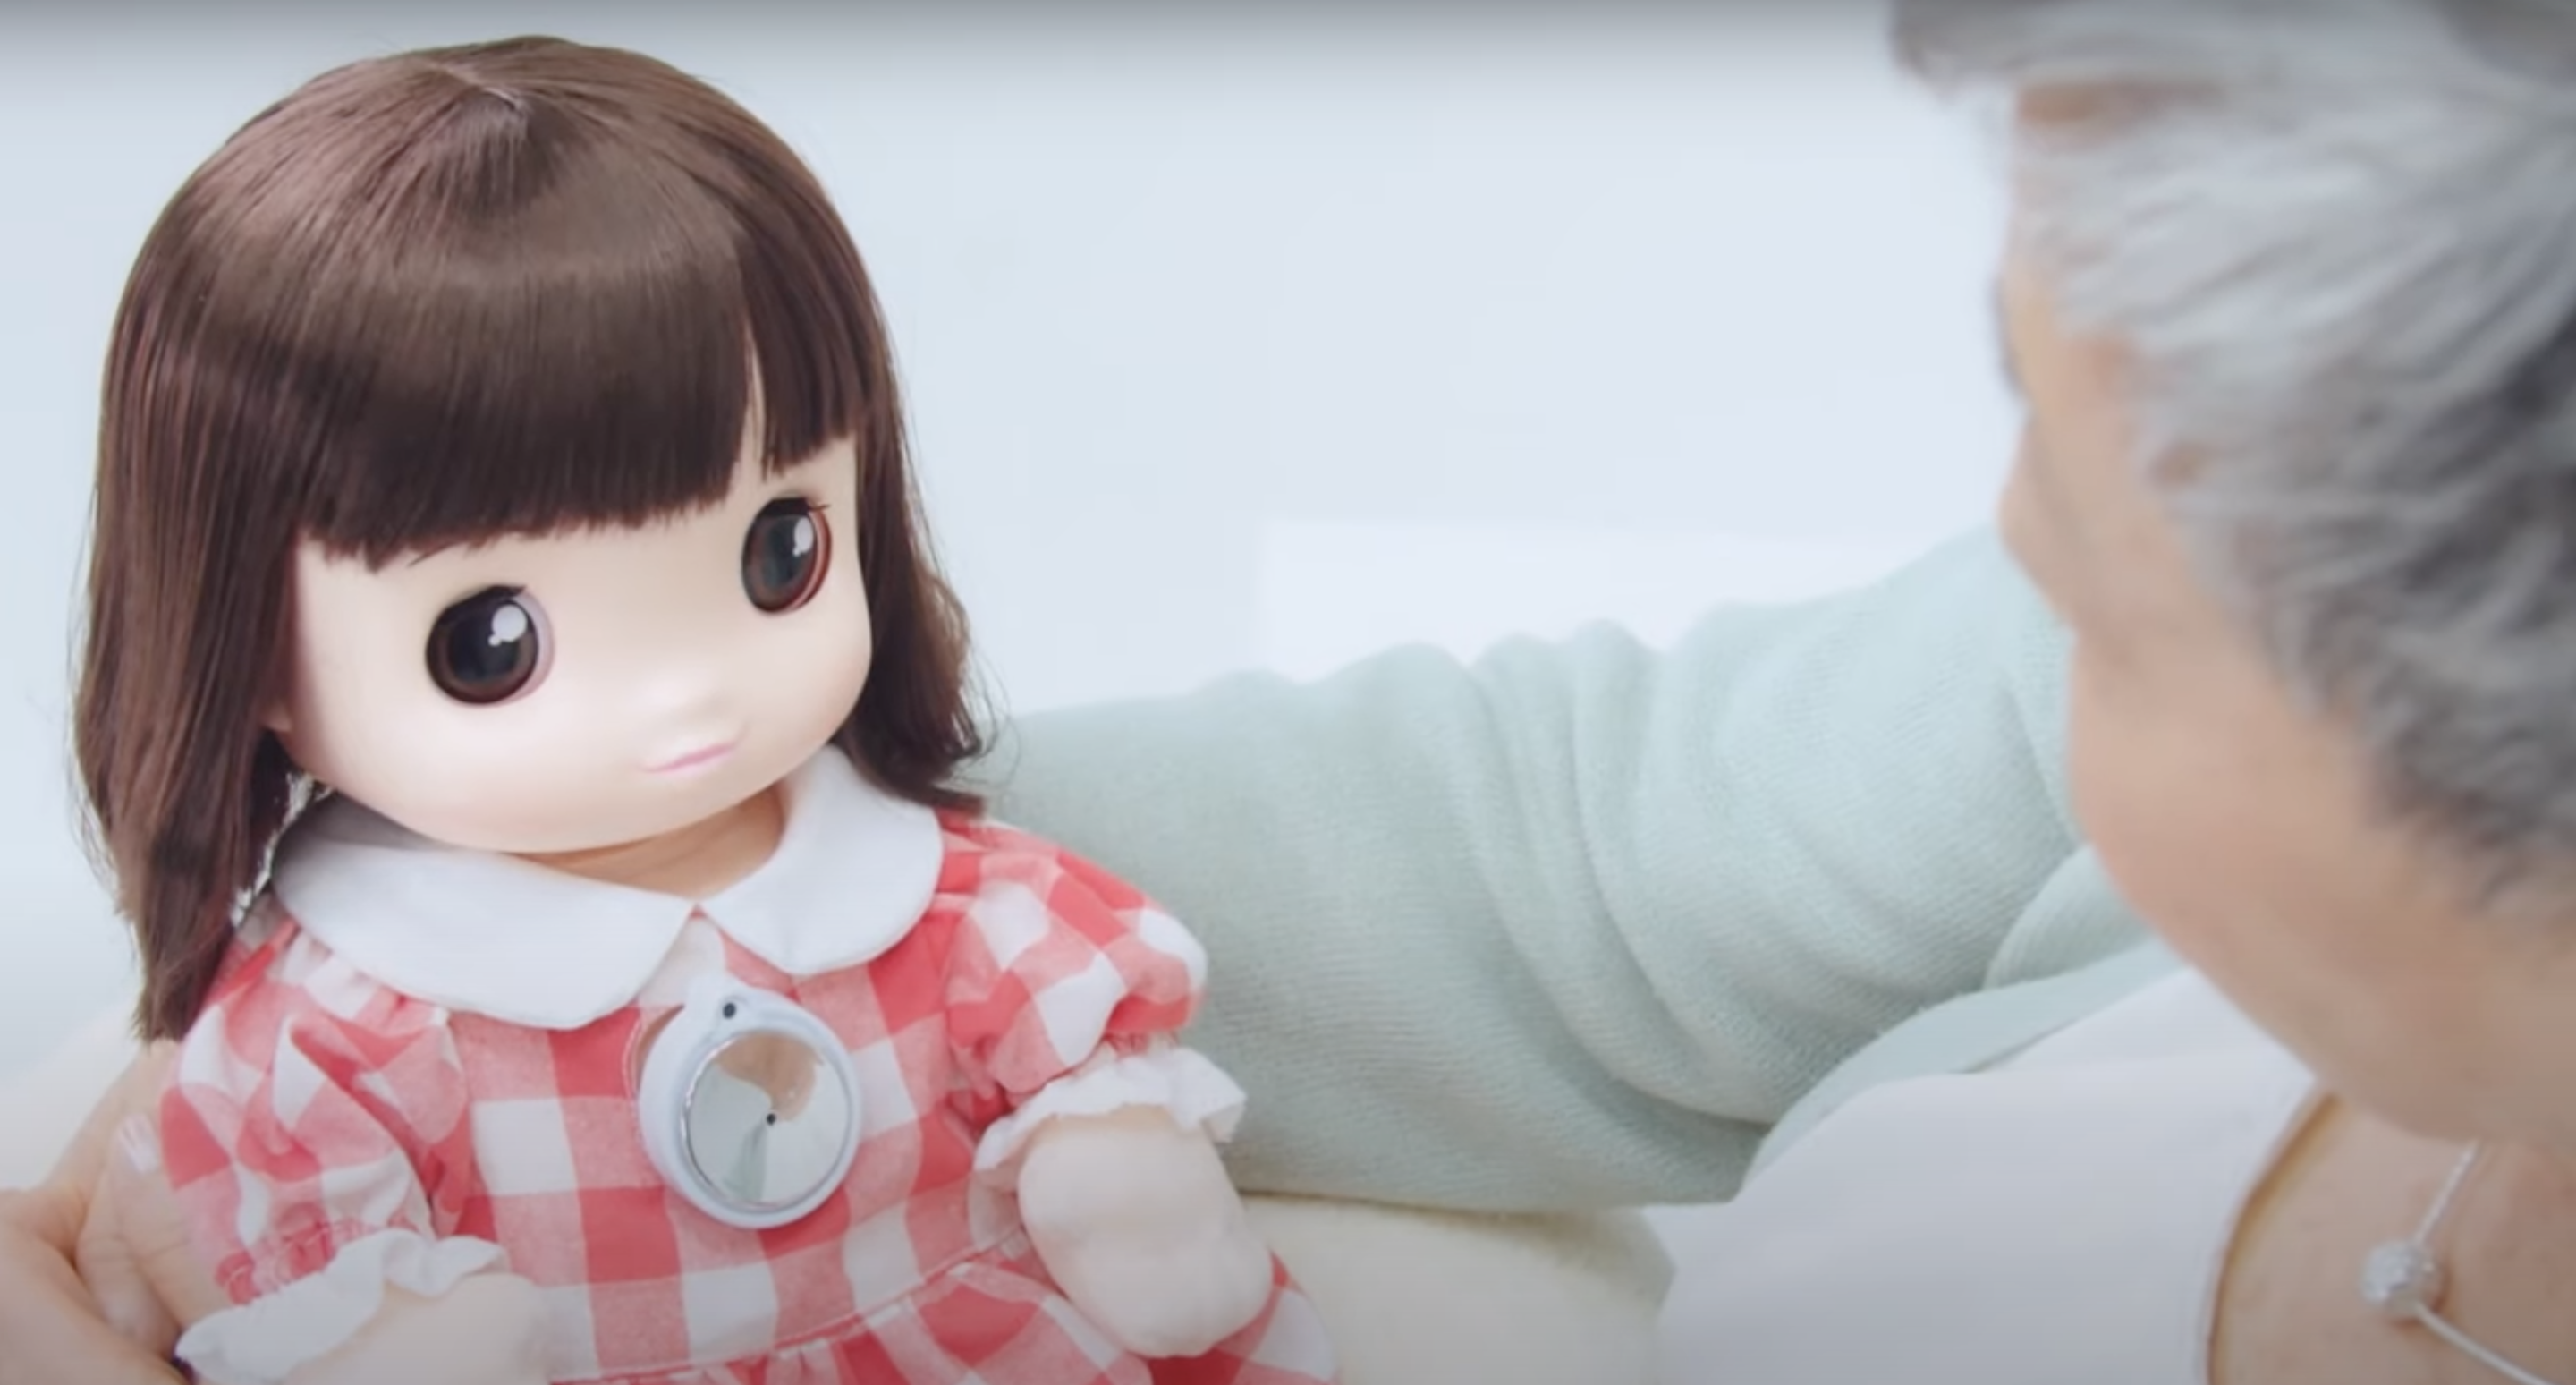 タカラトミーがシニア向けの幼児型人形「あみちゃん」を発売─AIにより約25億通りの多彩なおしゃべりが可能 | 知財図鑑